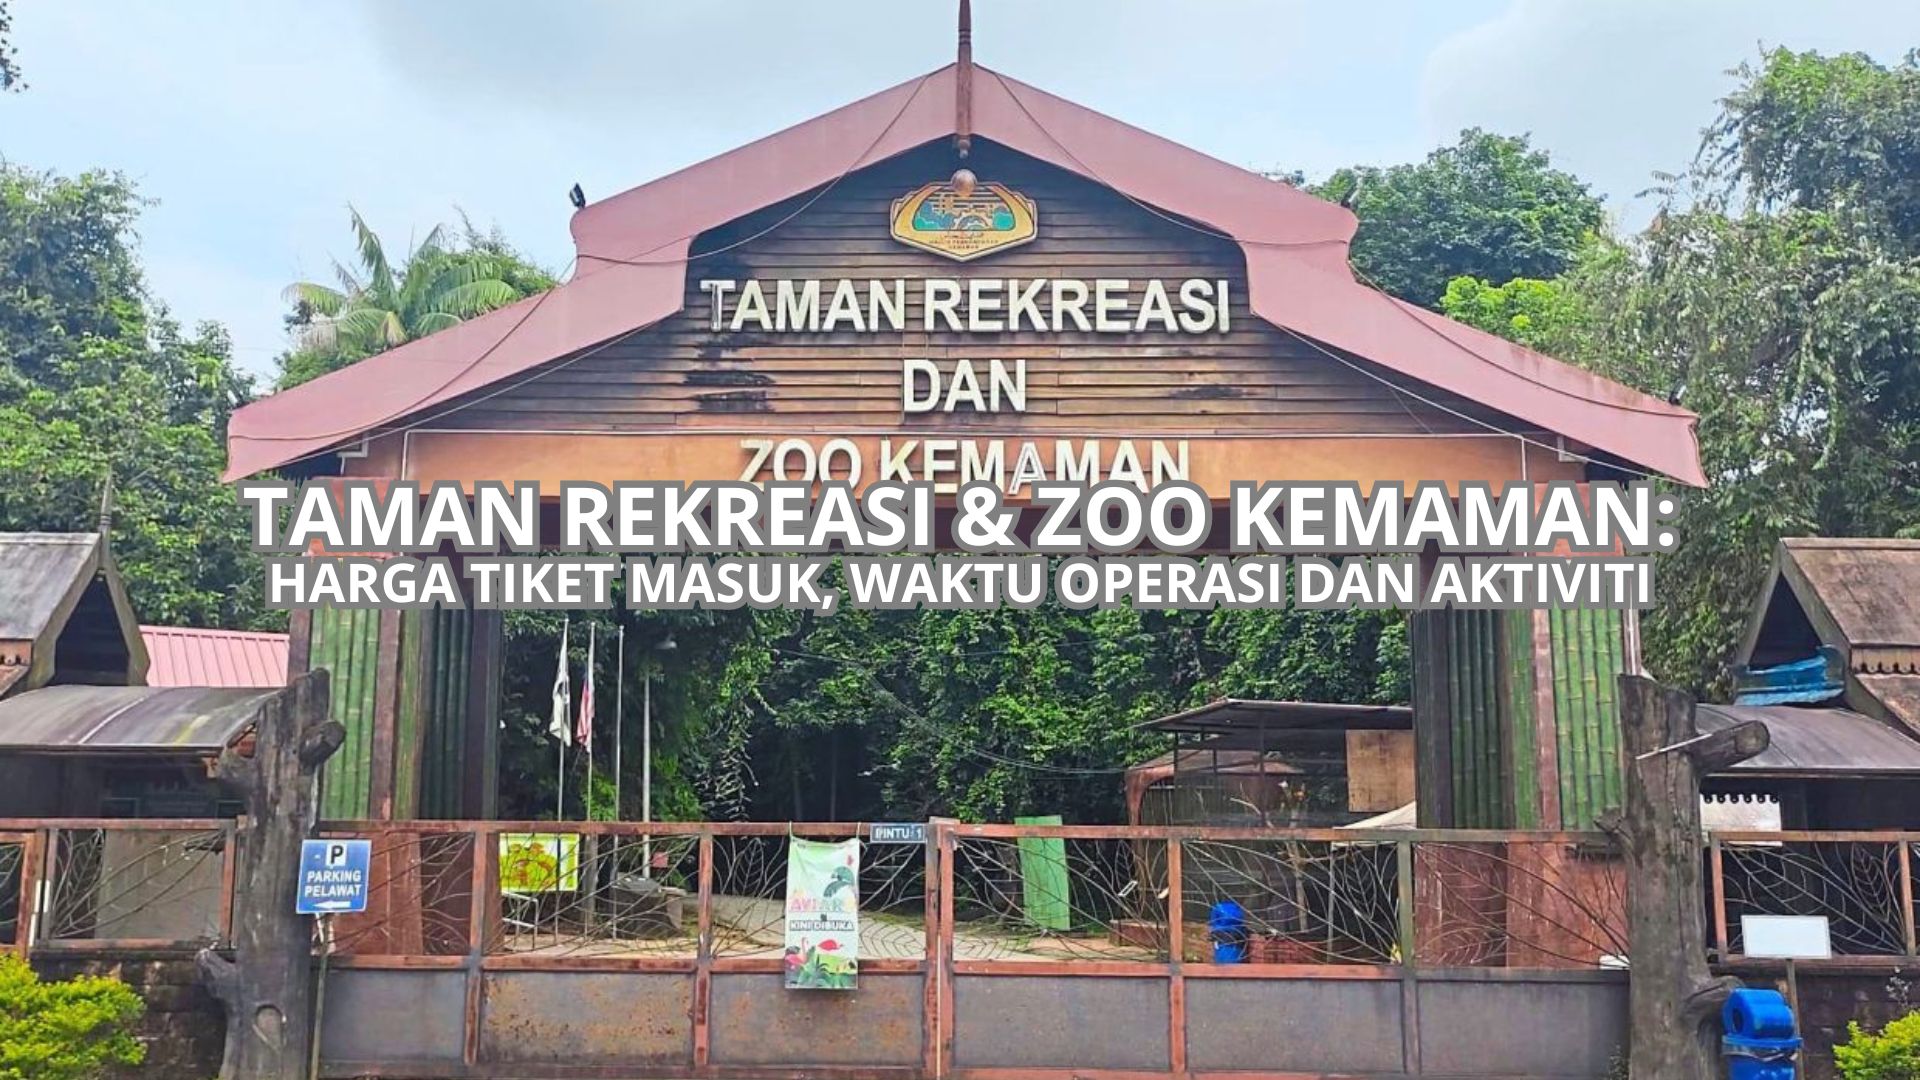 Taman Rekreasi & Zoo Kemaman Cover